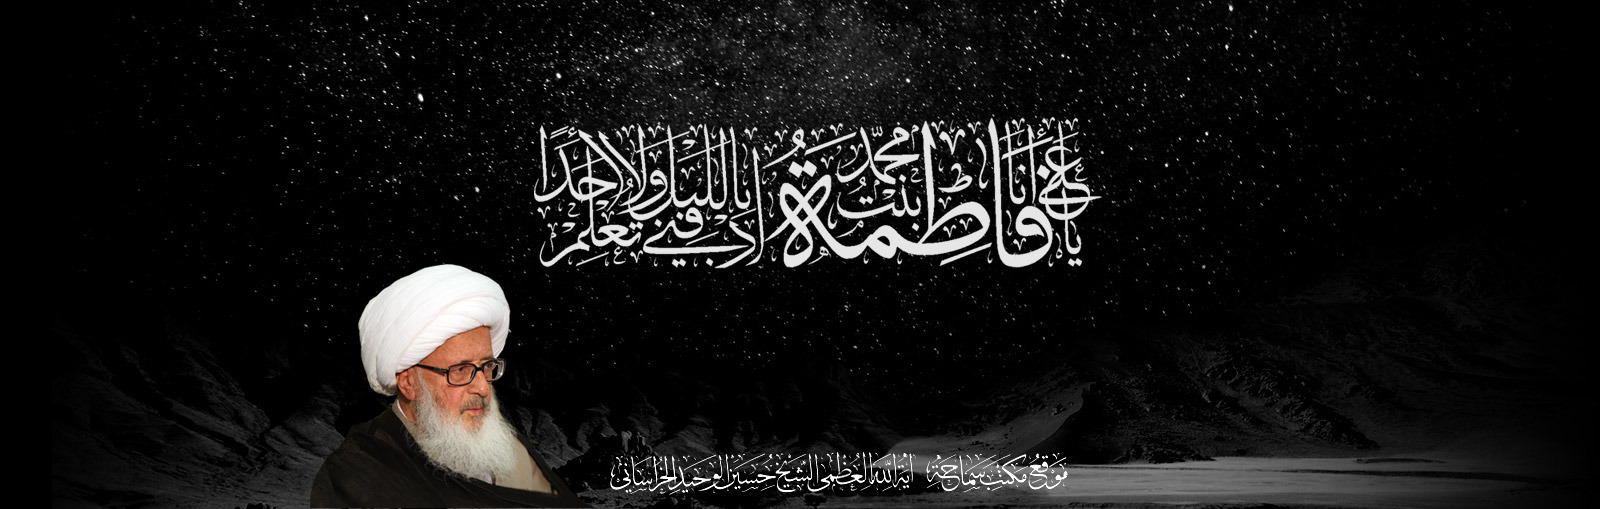 wahid khorasani ramezan banner sprited